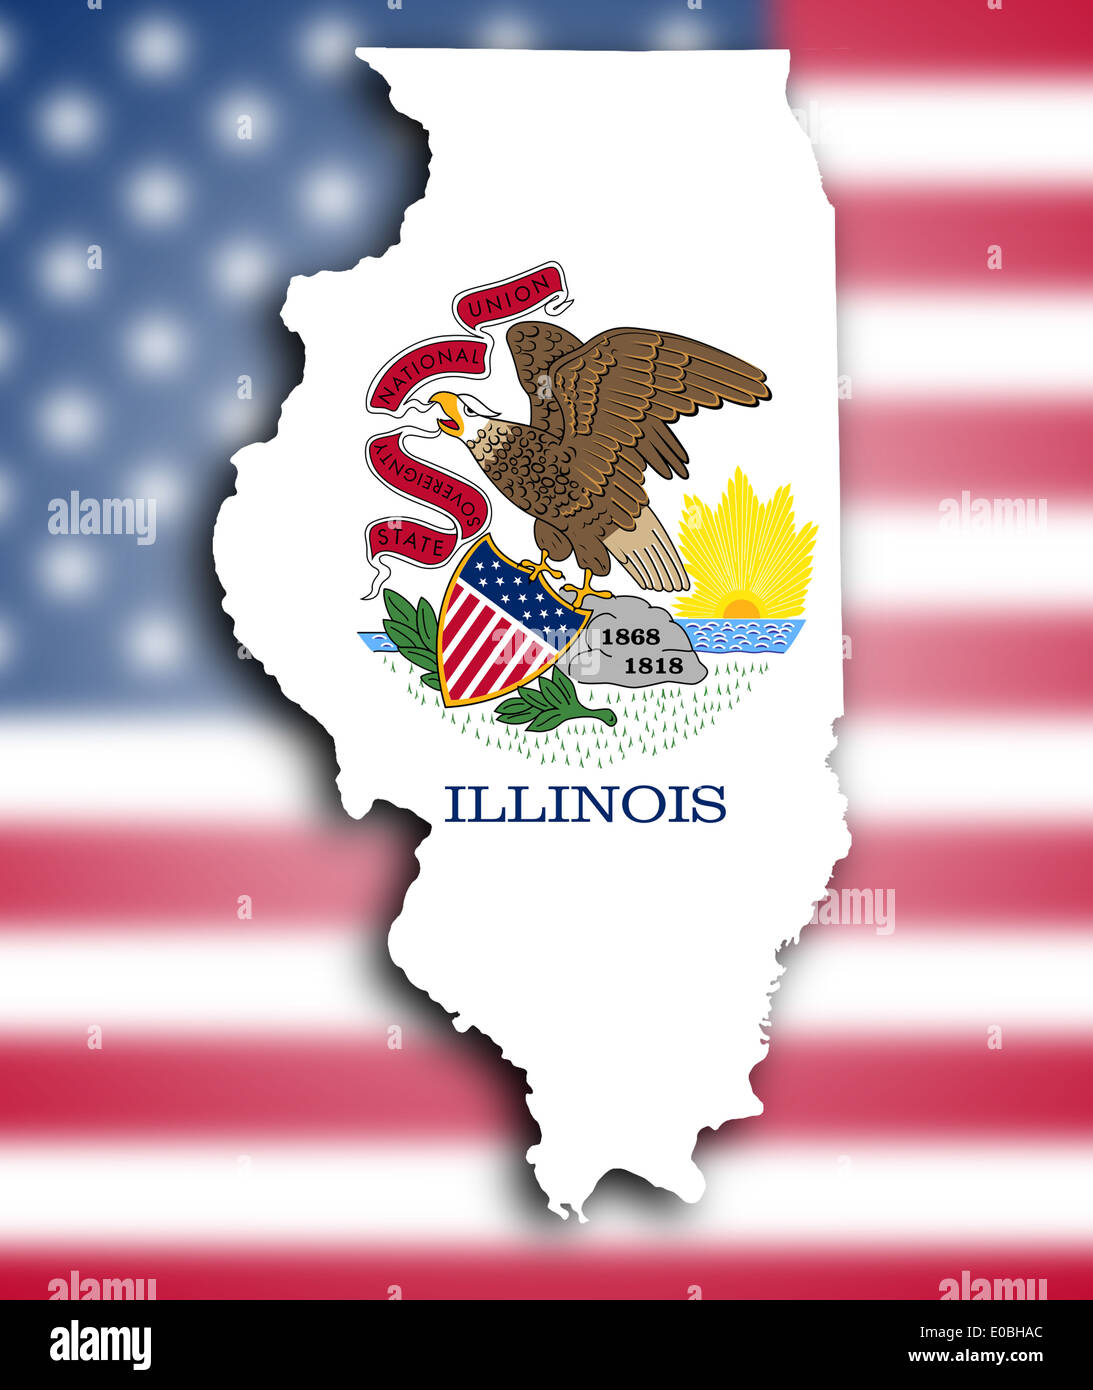 Иллинойс на карте. Штат Иллинойс на карте. Штат Иллинойс на карте США. Иллинойс на карте США. Illinois на карте.